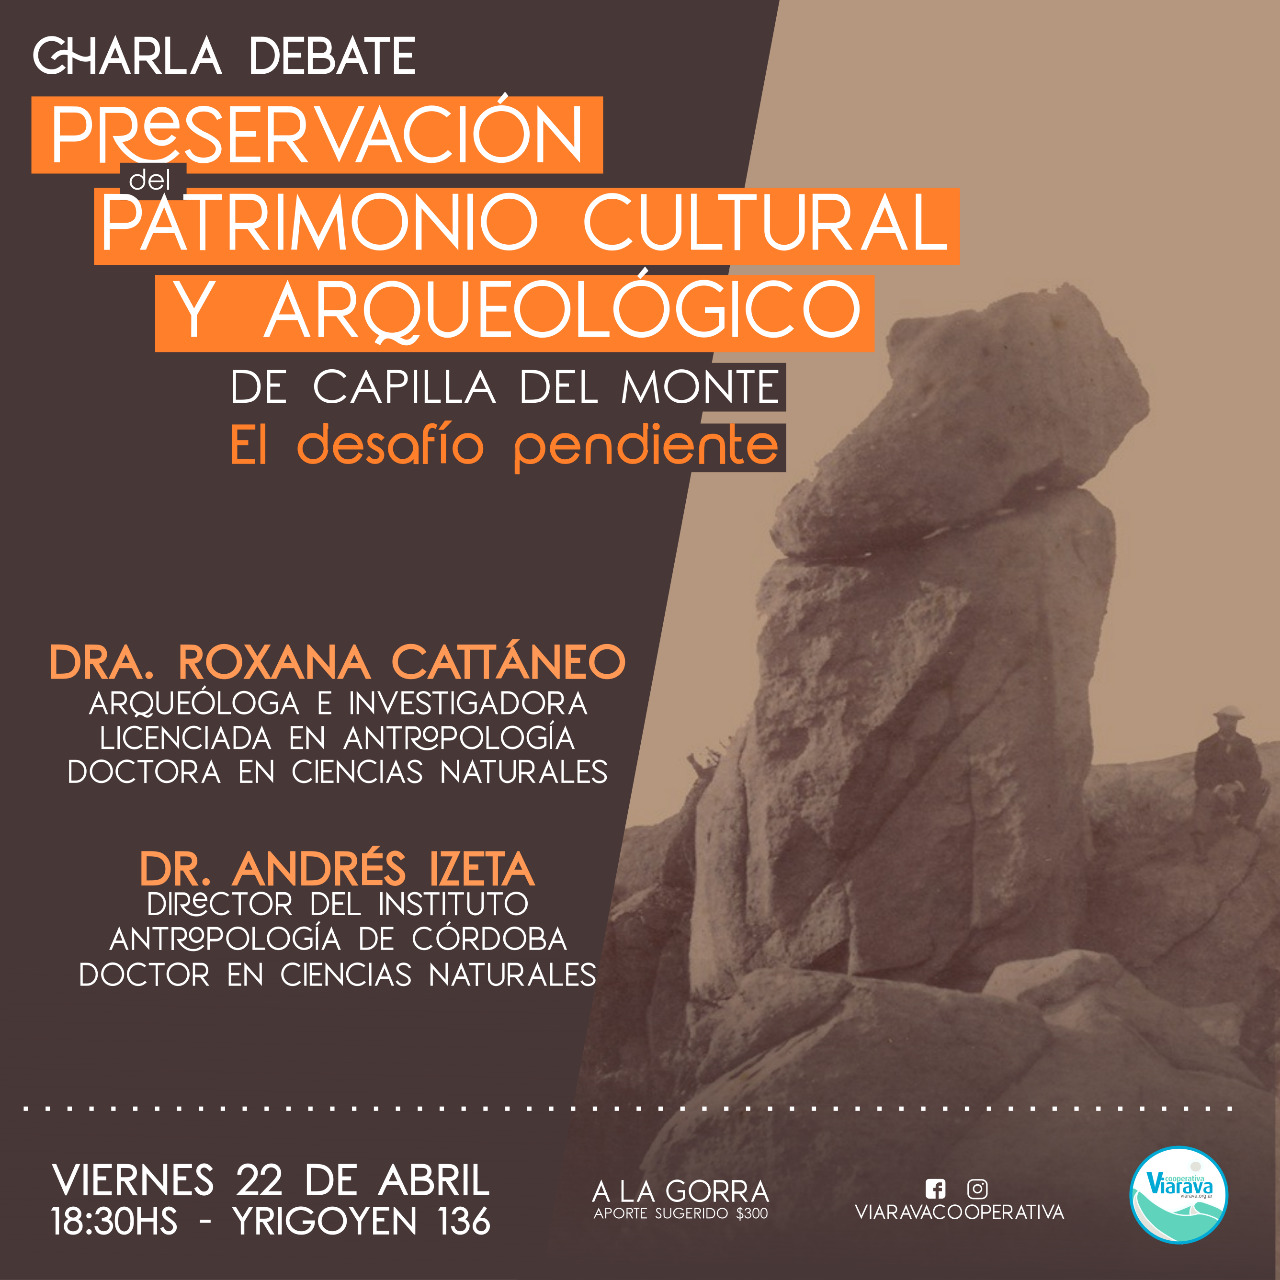 Charla debate: Preservación del Patrimonio Cultural y Arqueológico de Capilla del Monte. El desafío pendiente